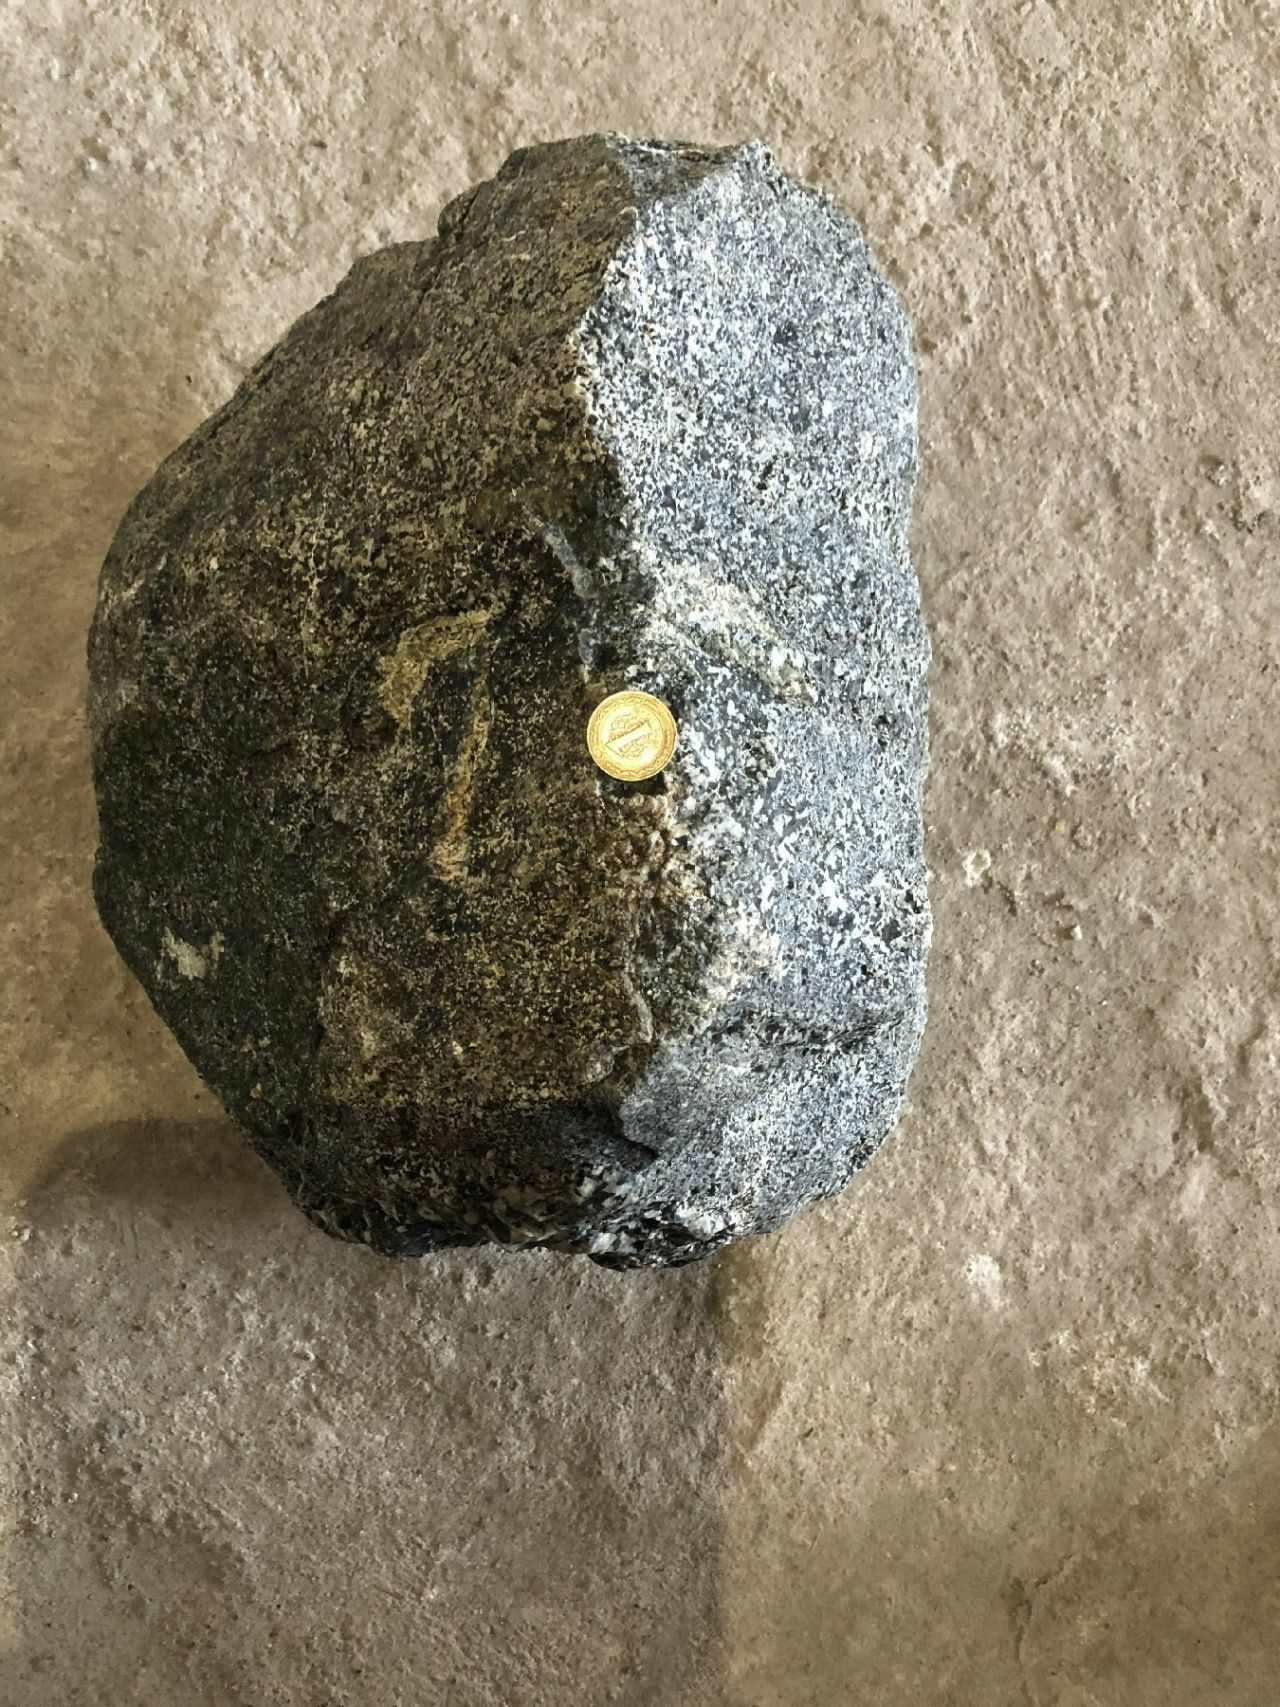 Sivaslı çiftçi tarlasında buldu! Esrarengiz taş 2 katı ağırlıkta